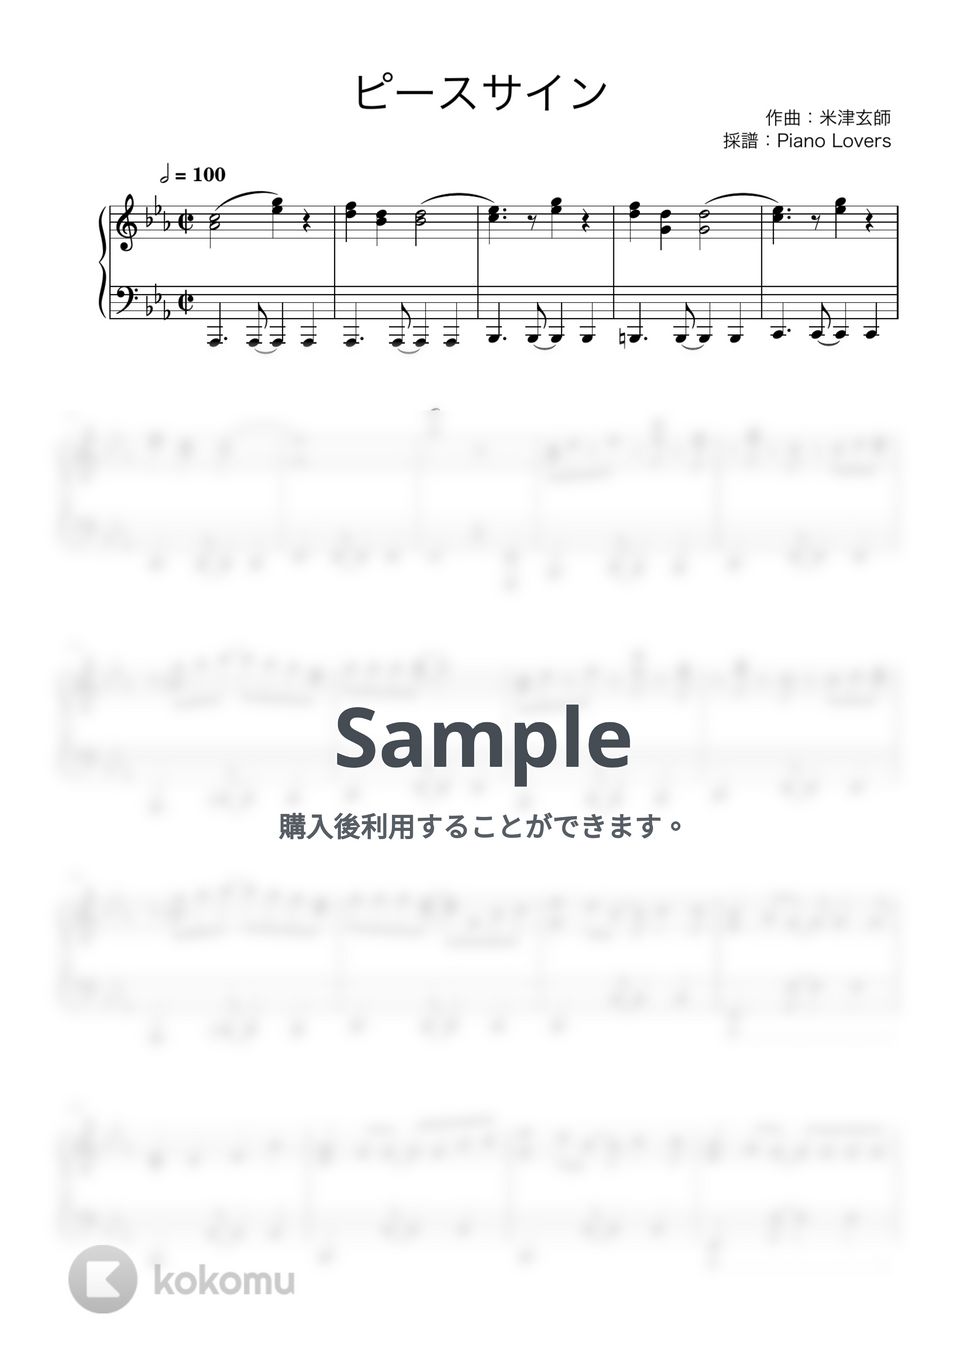 米津玄師 - ピースサイン (僕のヒーローアカデミア / ピアノ楽譜 / 中級) by Piano Lovers. jp